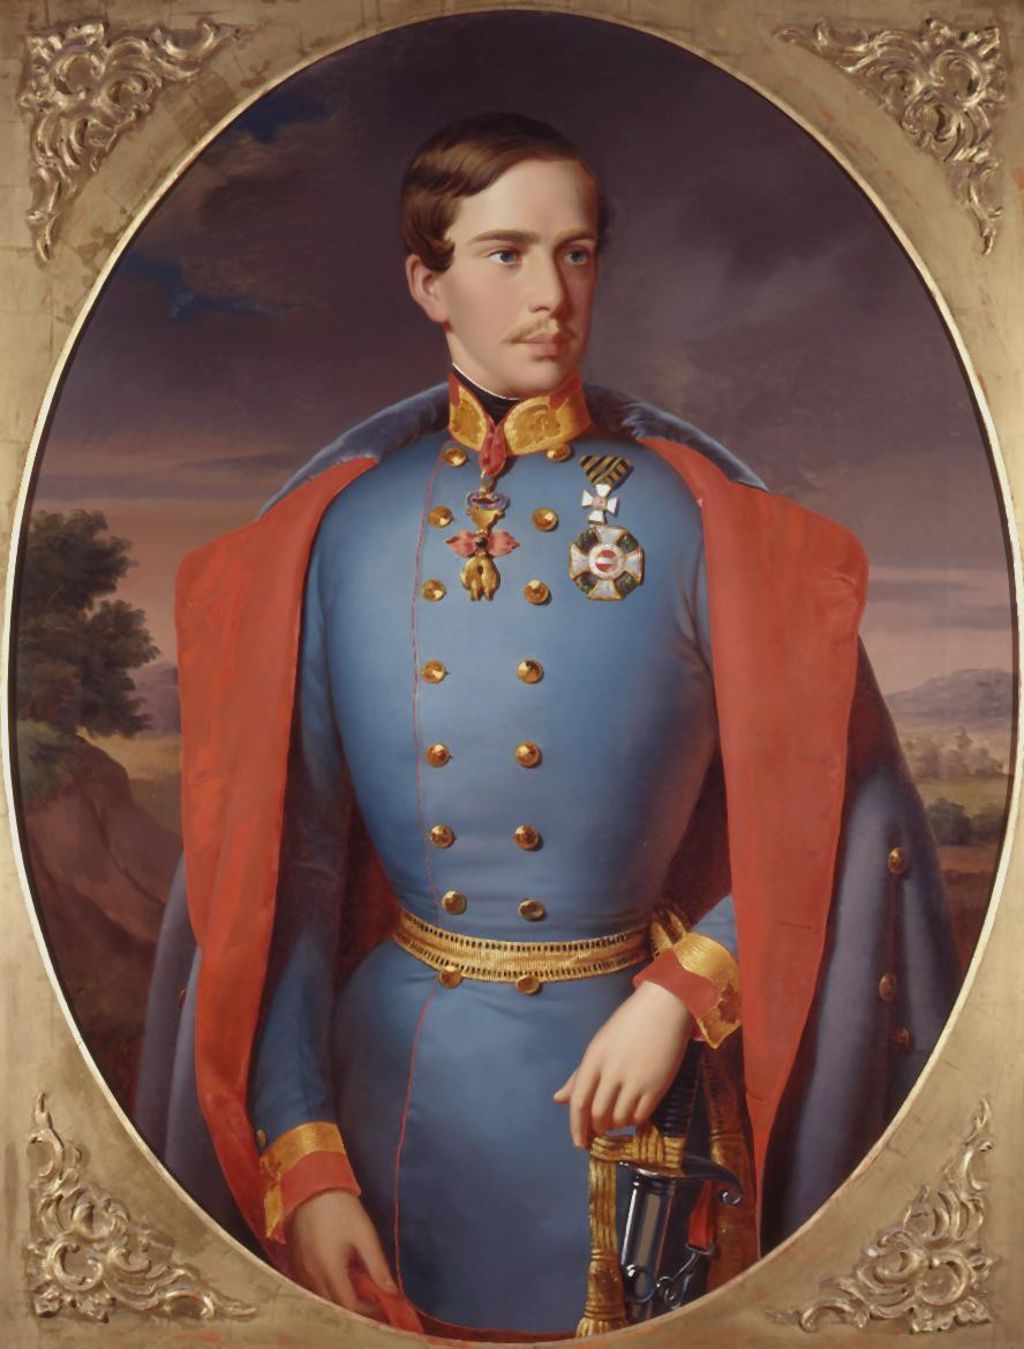 Gemälde: "Franz Joseph I., Kaiser von Österreich ", um 1850